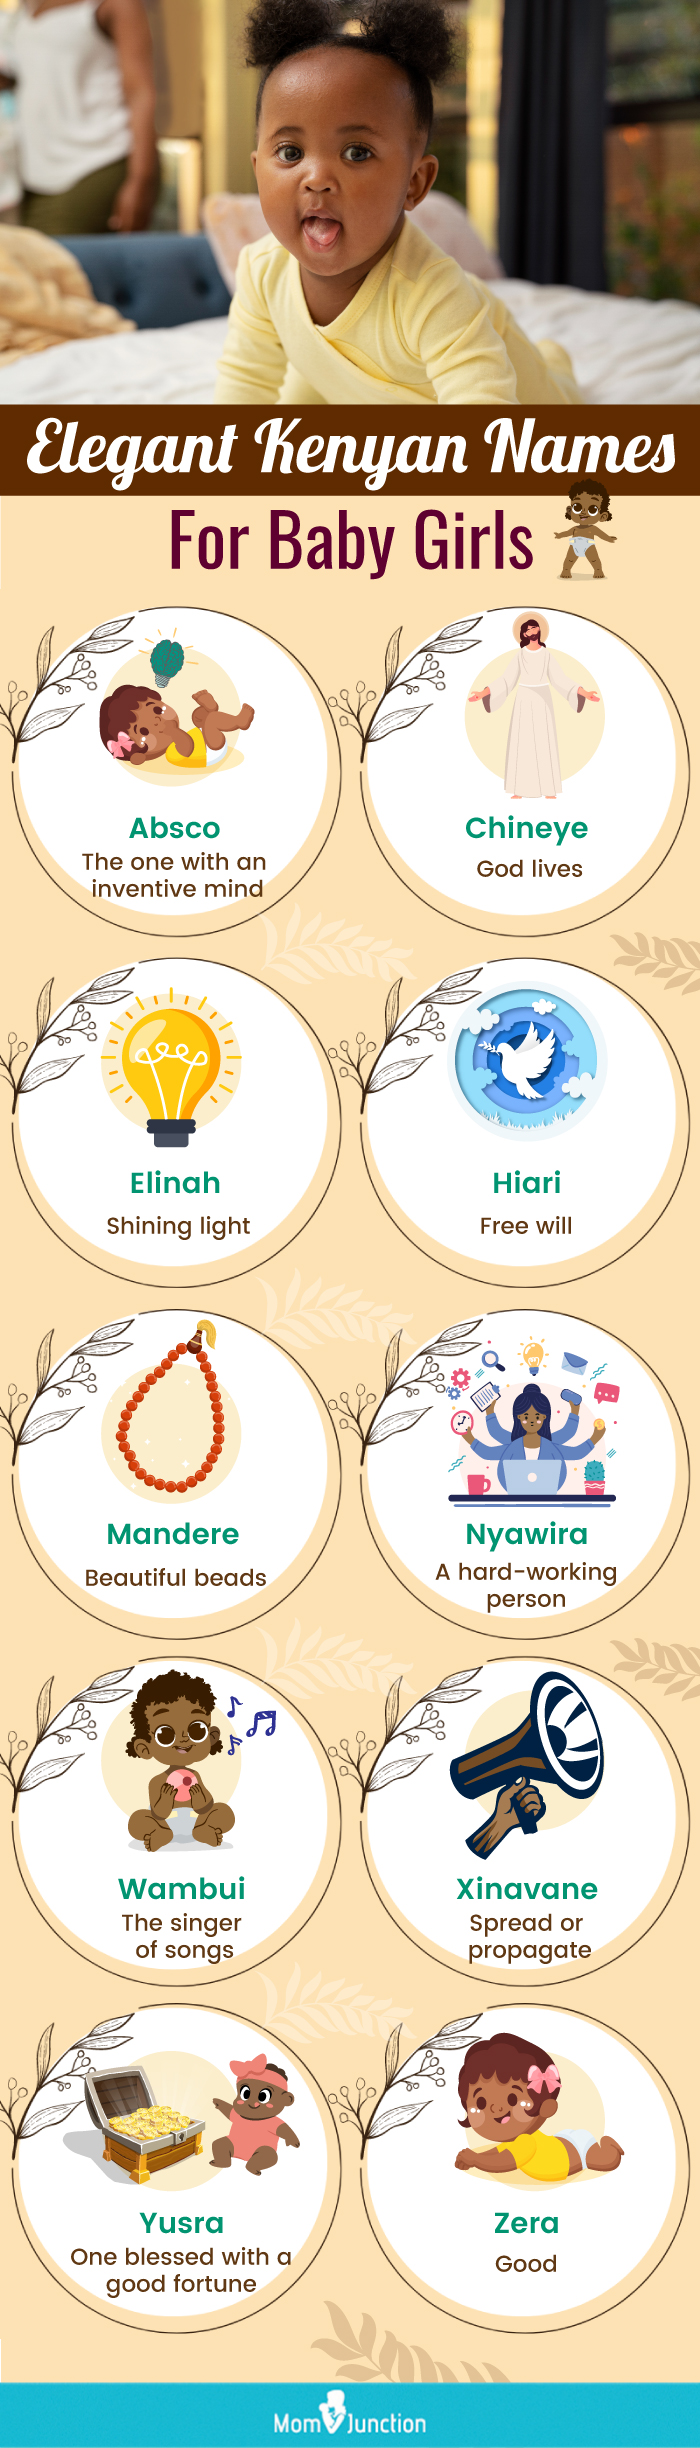 elegant kenyan names for baby girls (infographic)